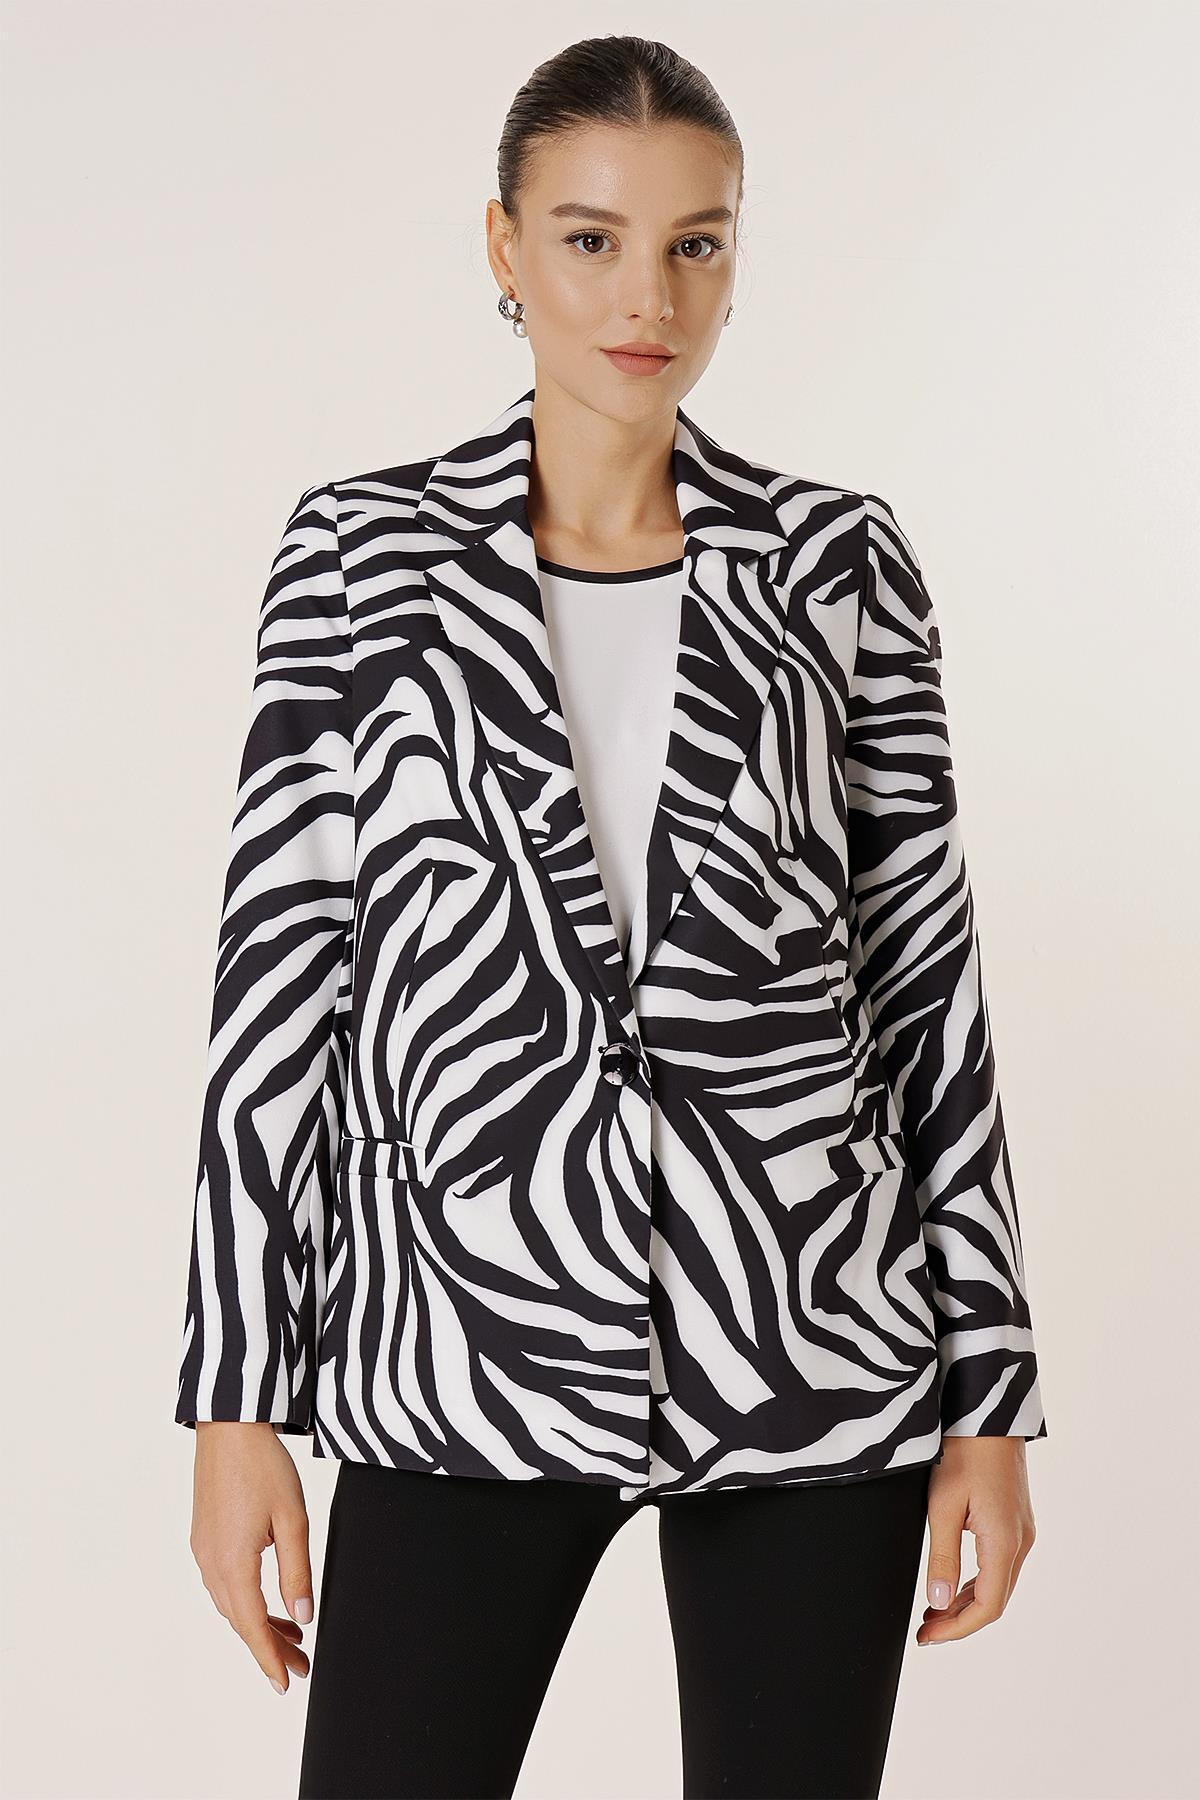 Levně By Saygı Single Button Lined Zebra Pattern Comfortable Fit Jacket